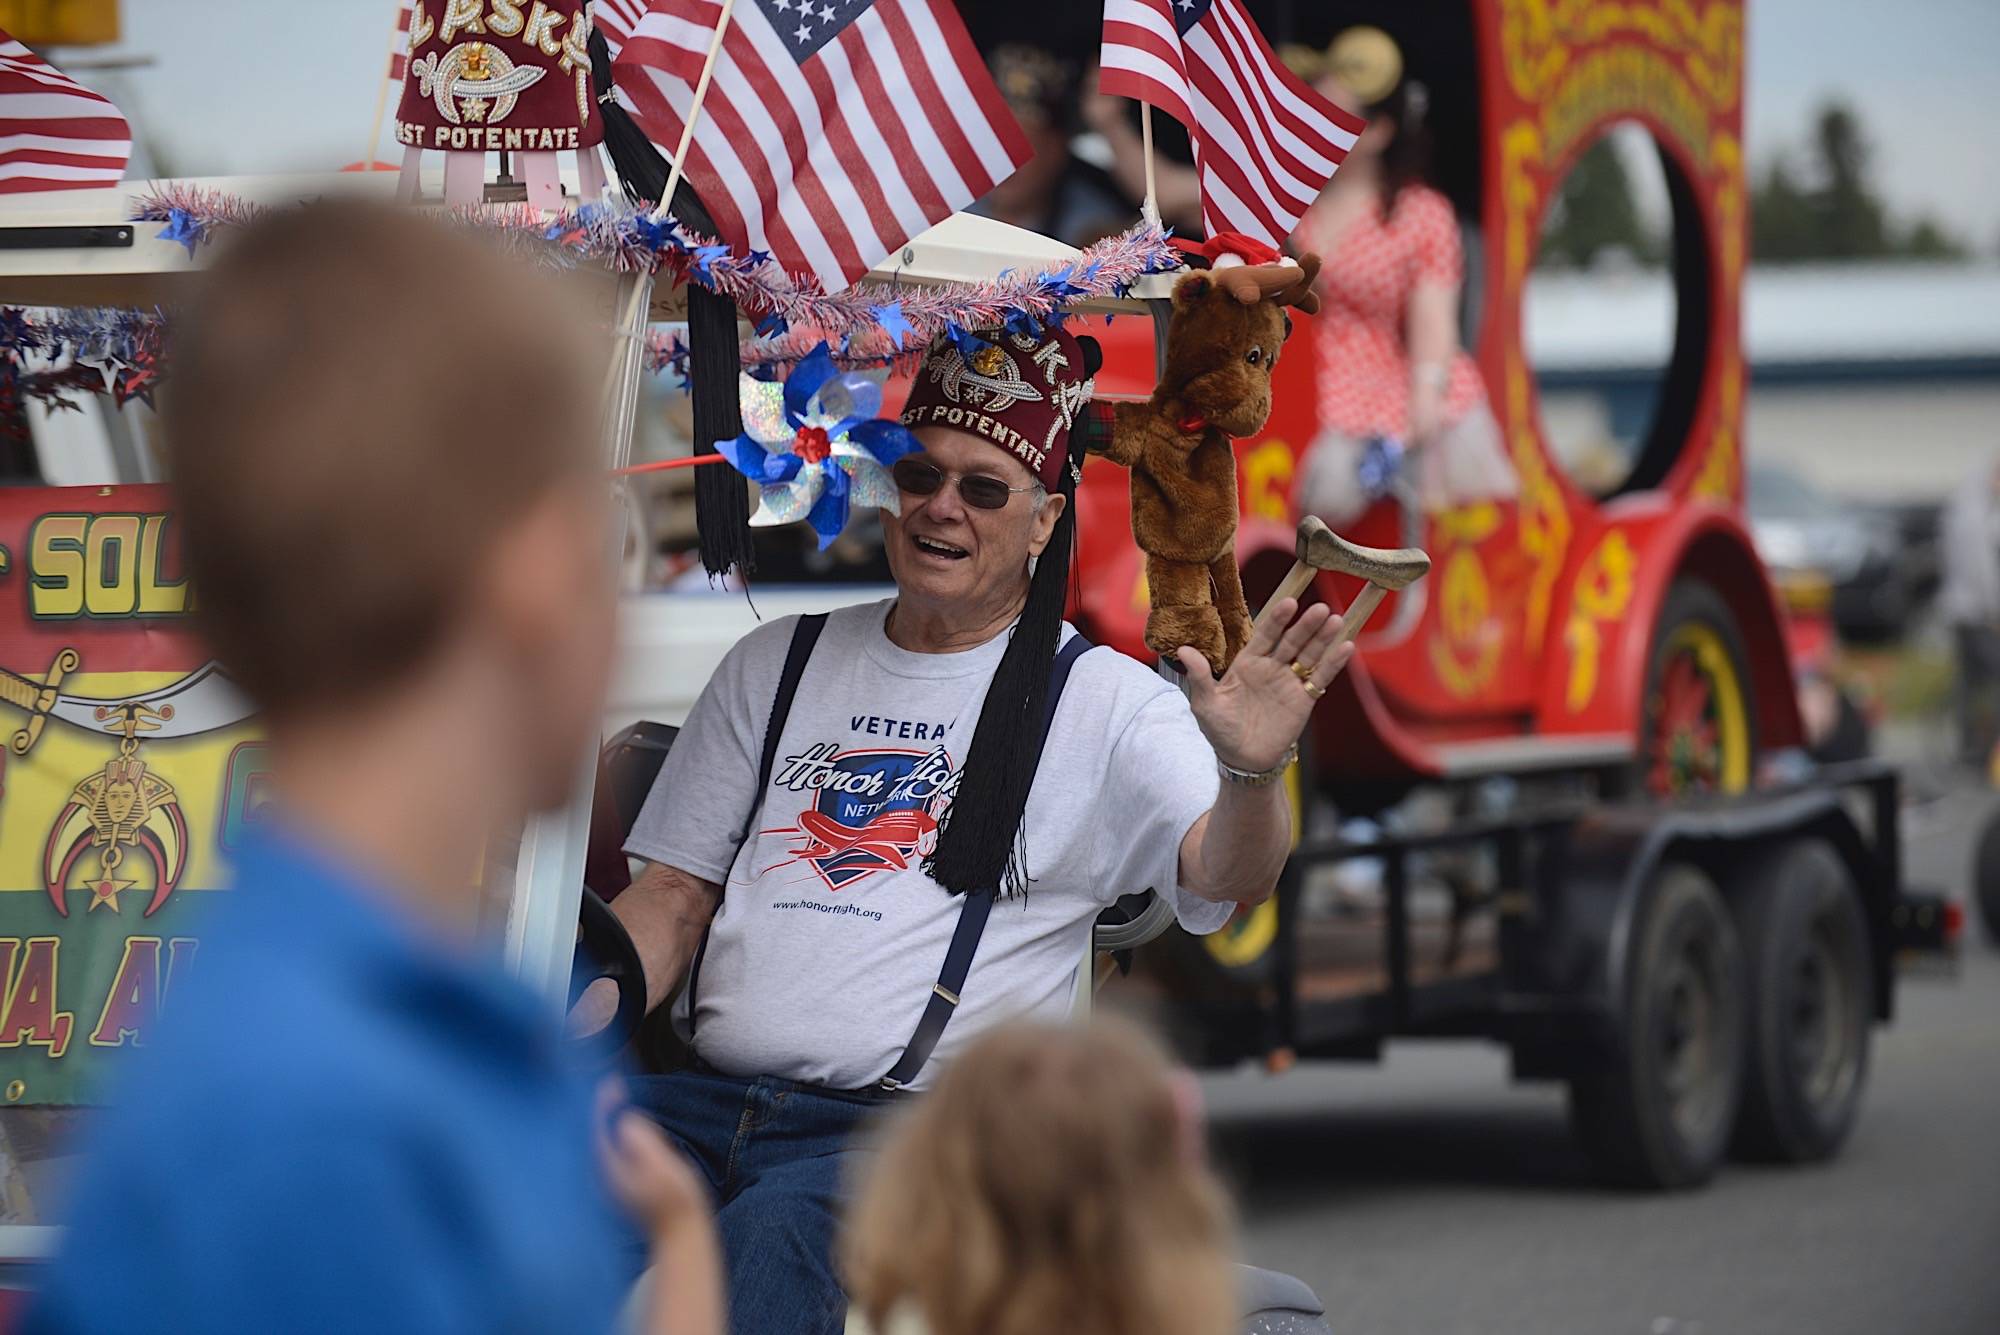 A man waves during the 2019 Kenai 4th of July Parade in Kenai, Alaska. (Clarion file)